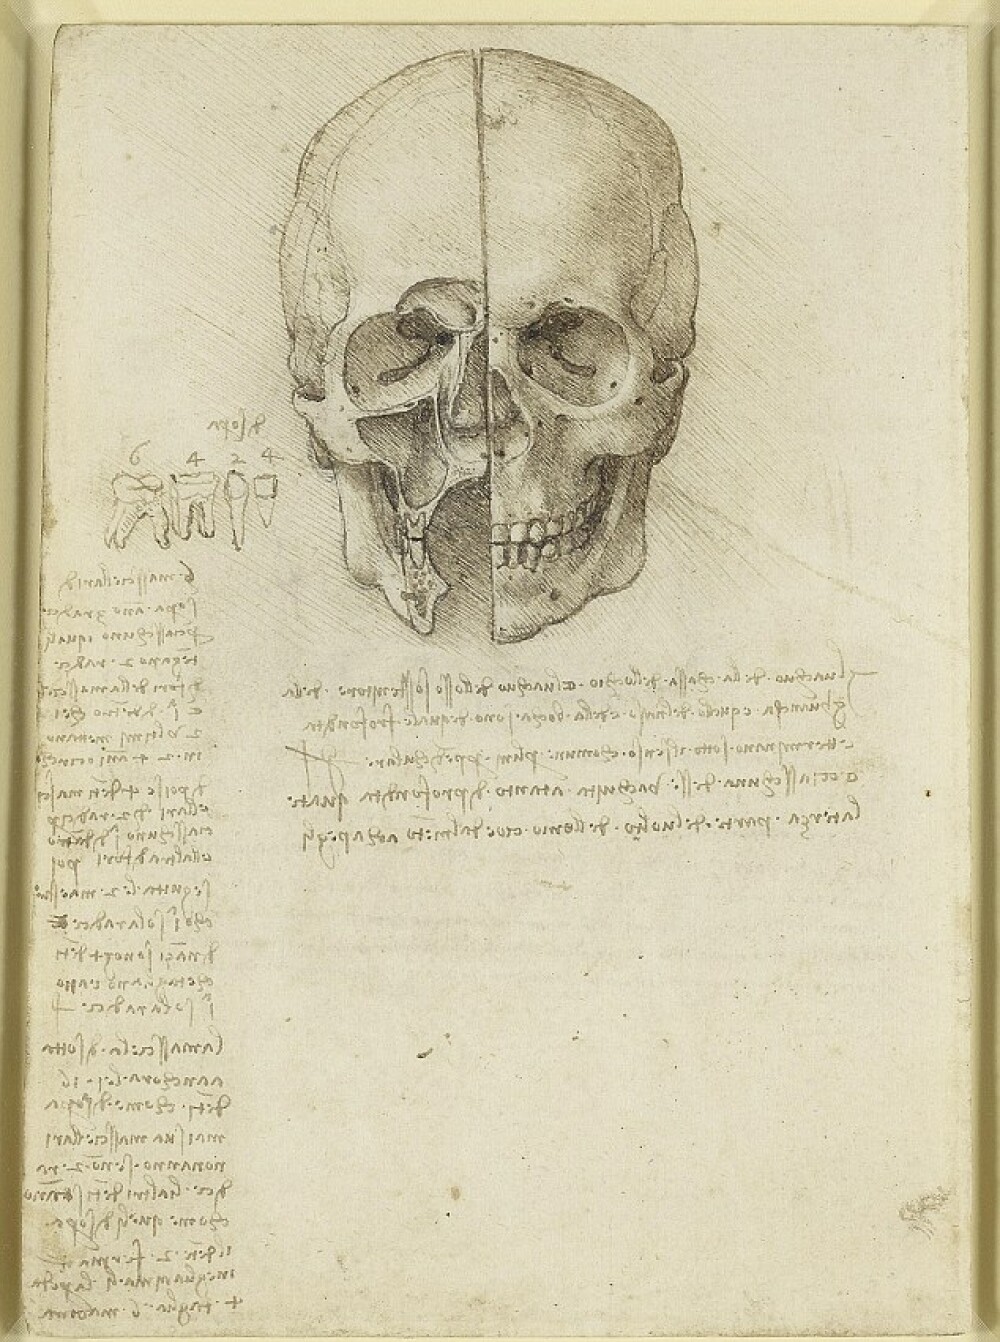 Jurnalul lui Leonardo da Vinci. “De cumparat azi: hartie, carbune si un craniu uman” - Imaginea 4